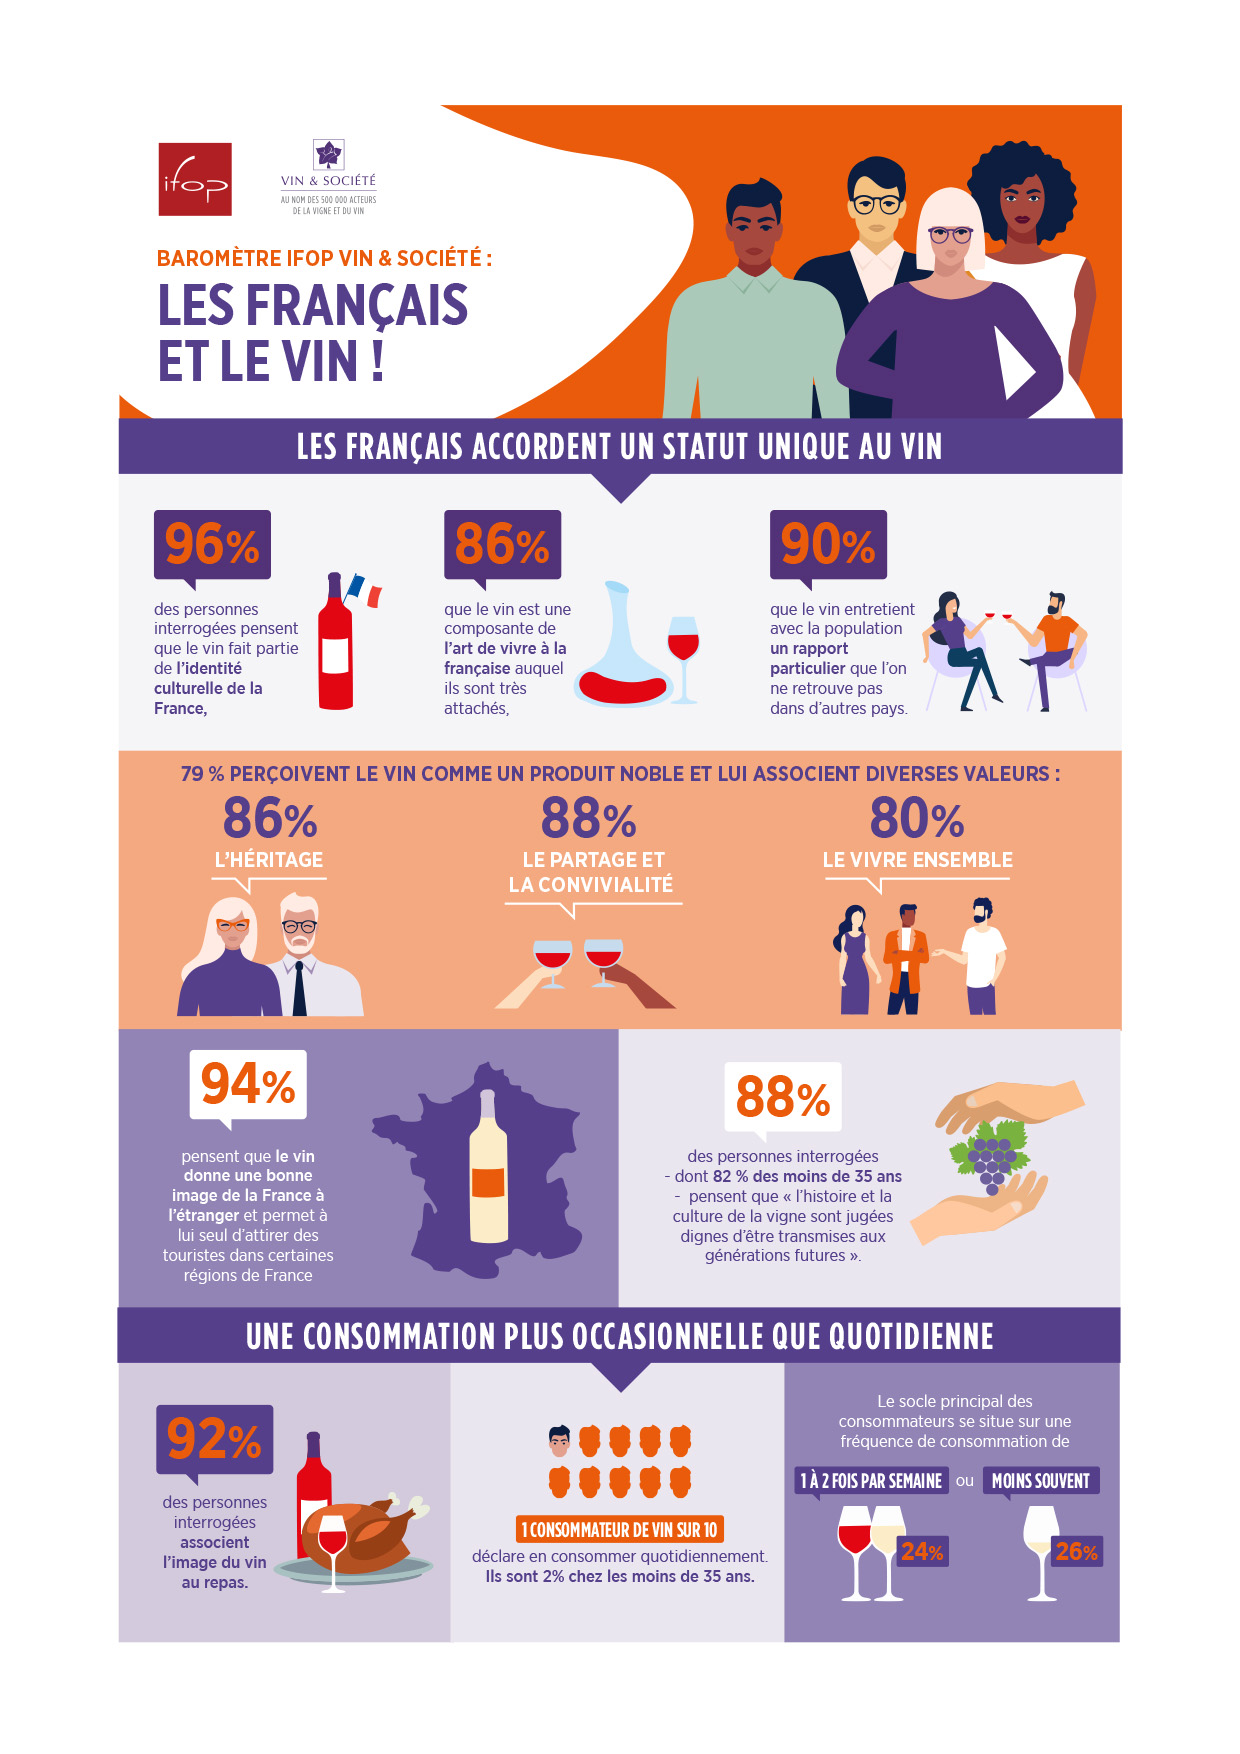 Les Français et le vin